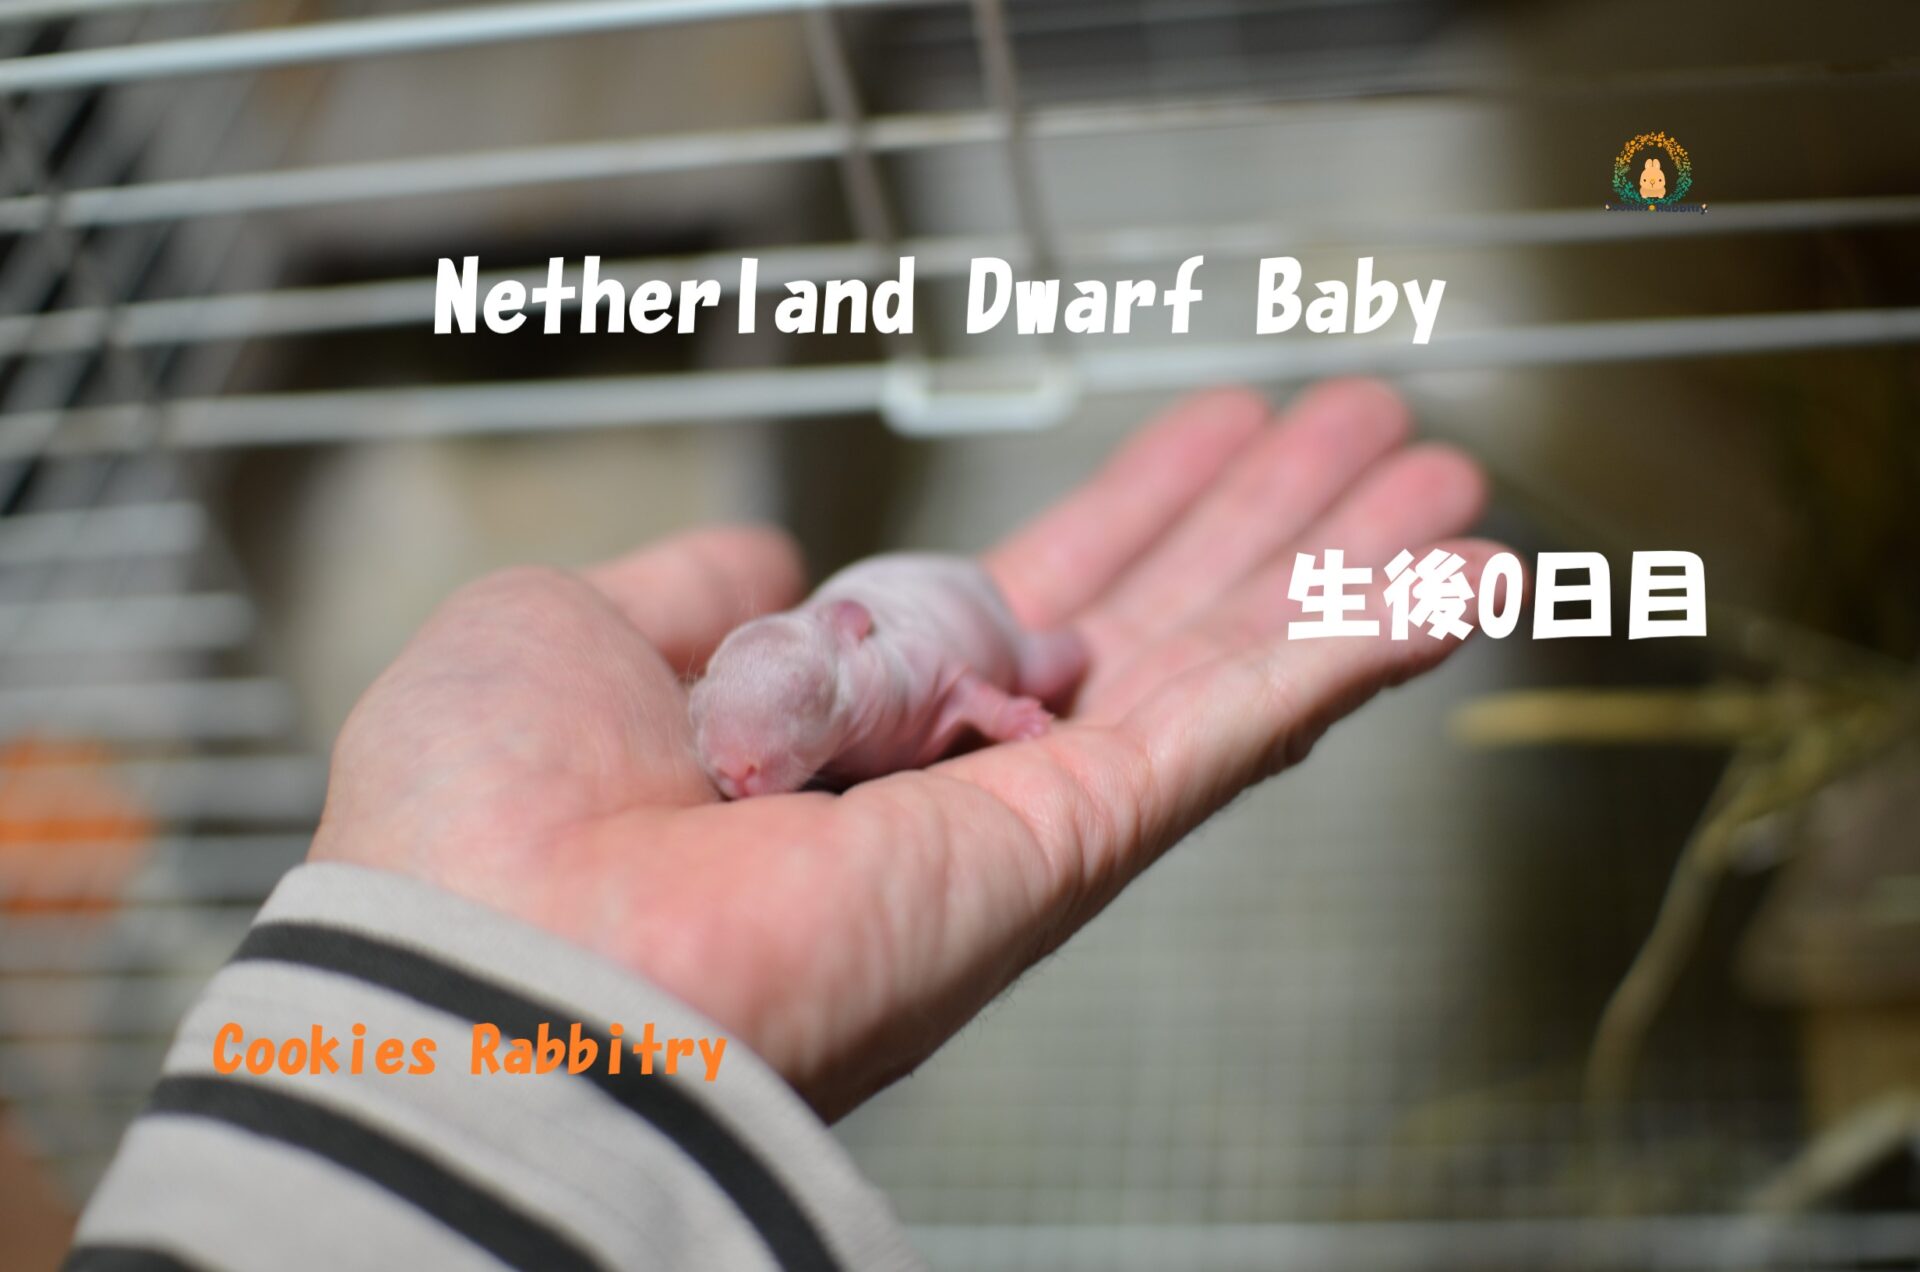 NetherlandDwarfの赤ちゃんが2021年3/4日に2匹生まれ どちらの子もリンクス色でした